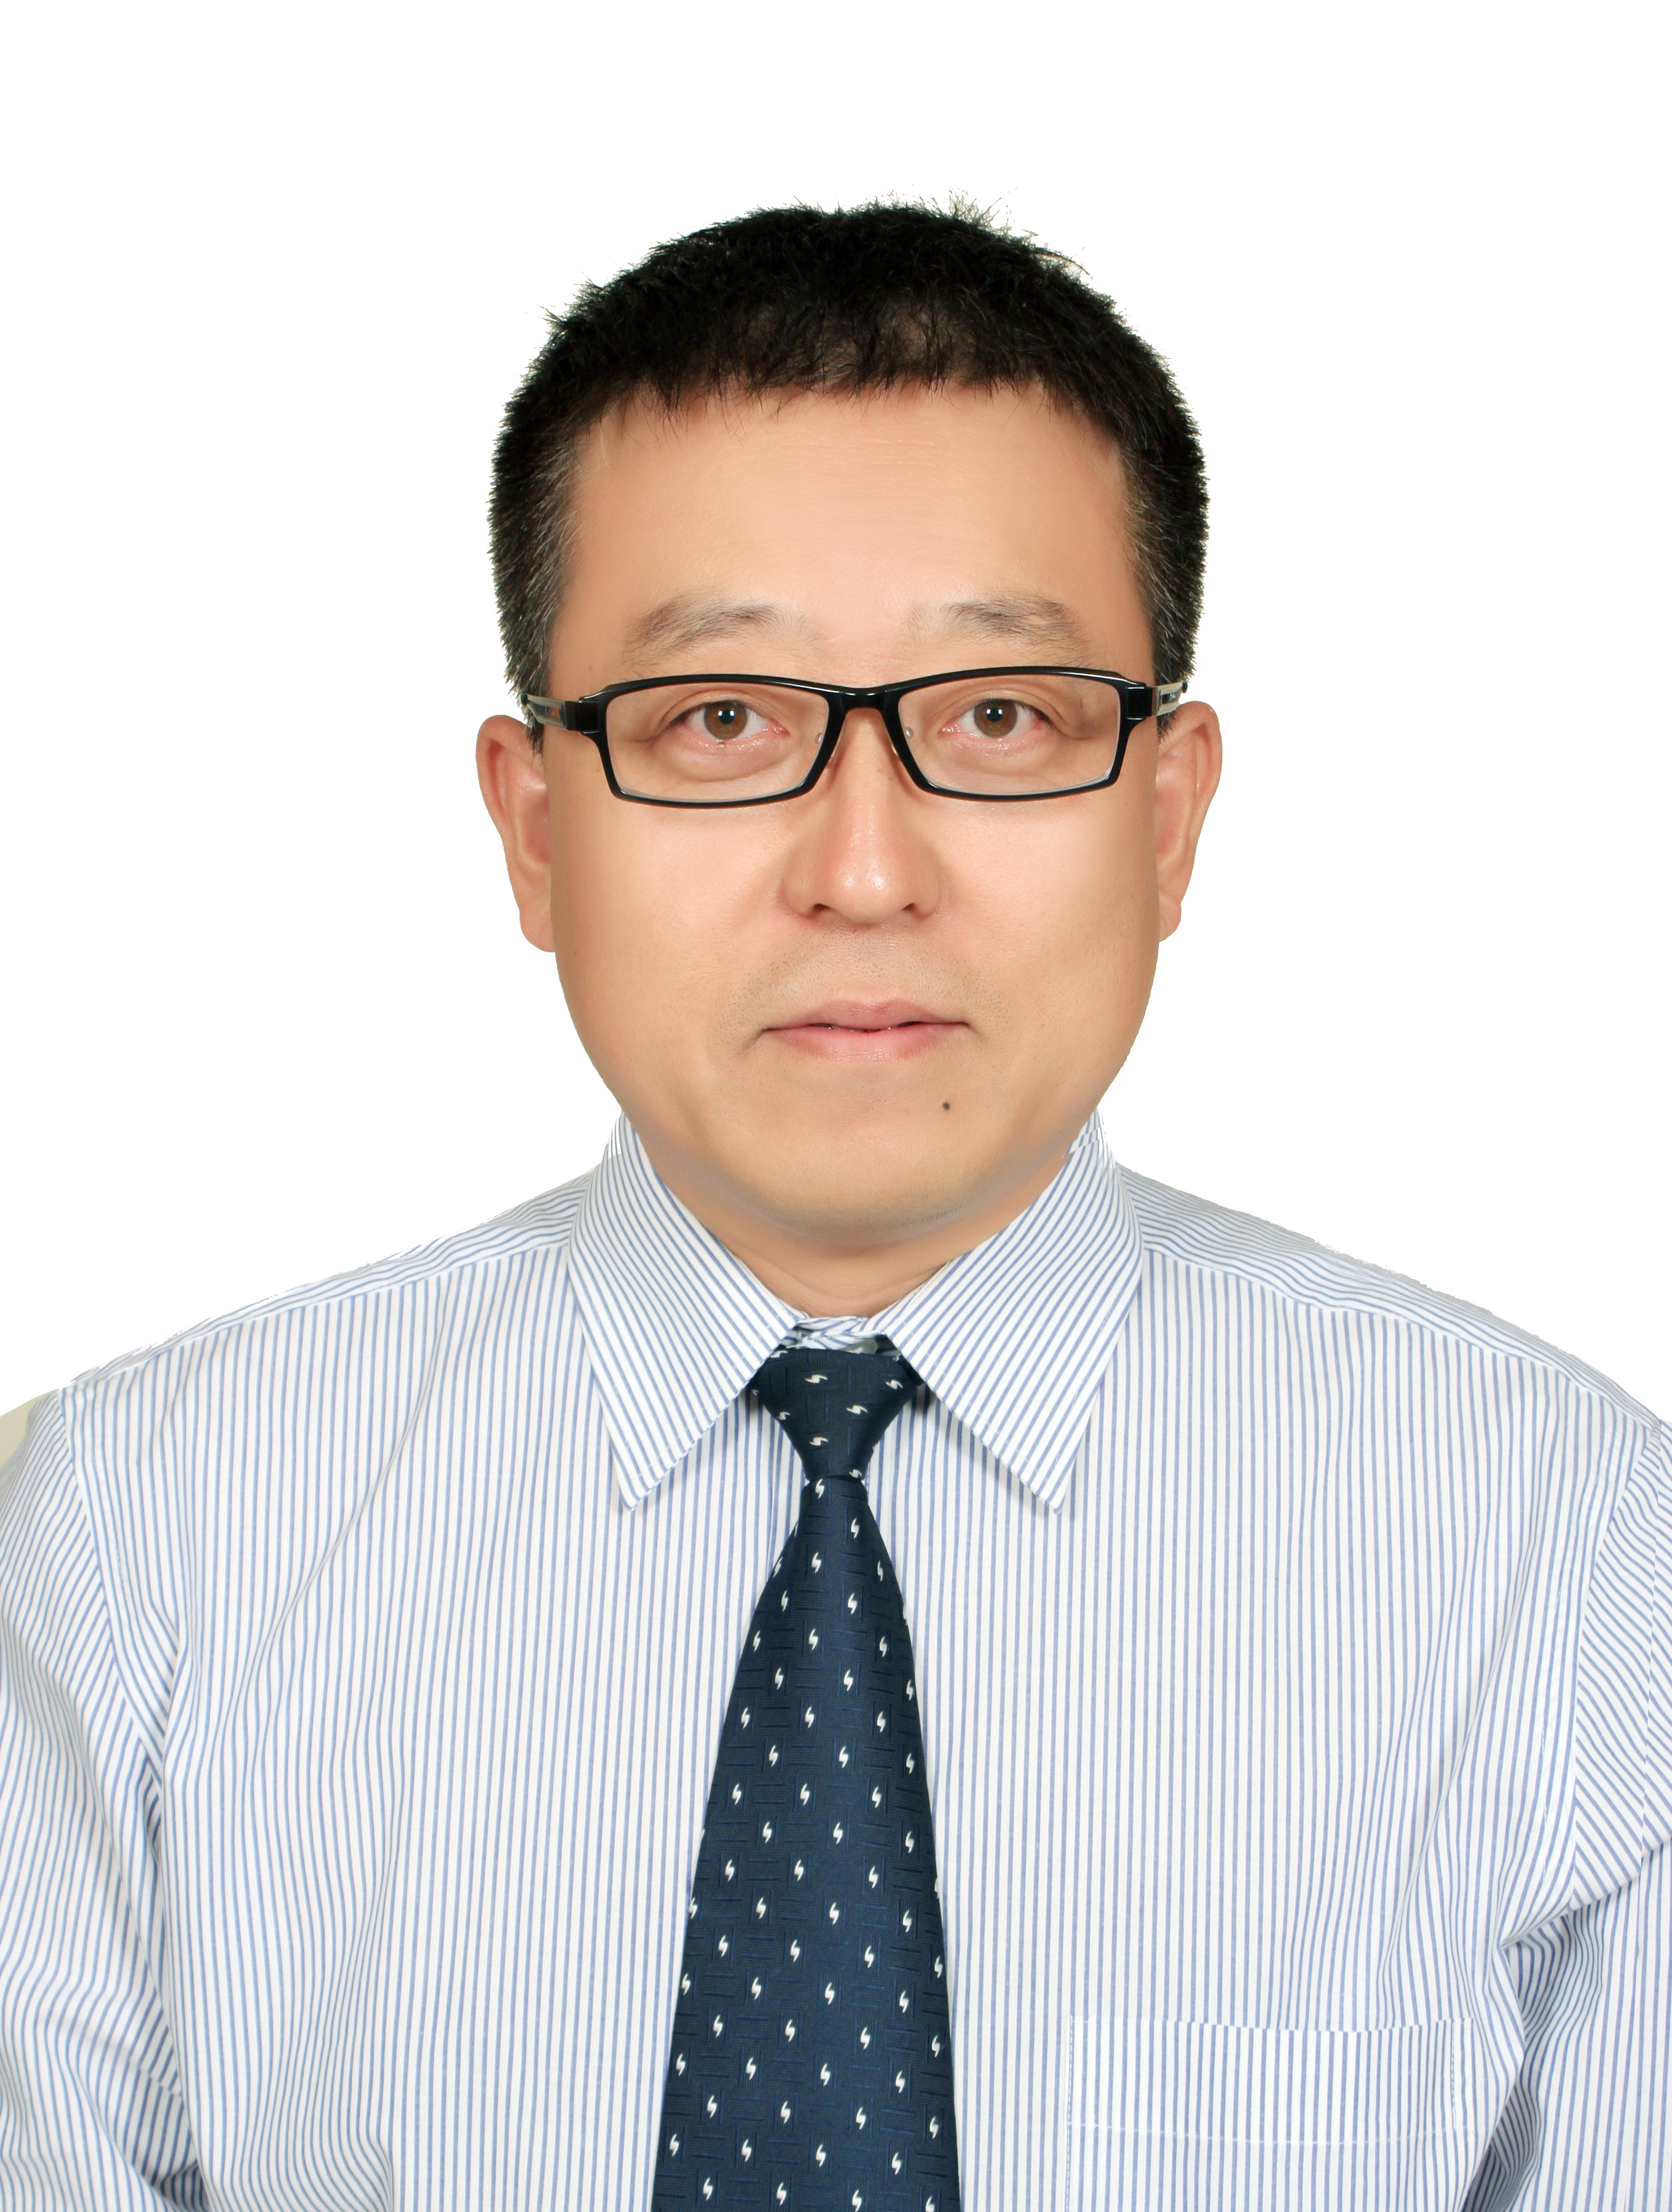 Hongjie Yuan, PhD